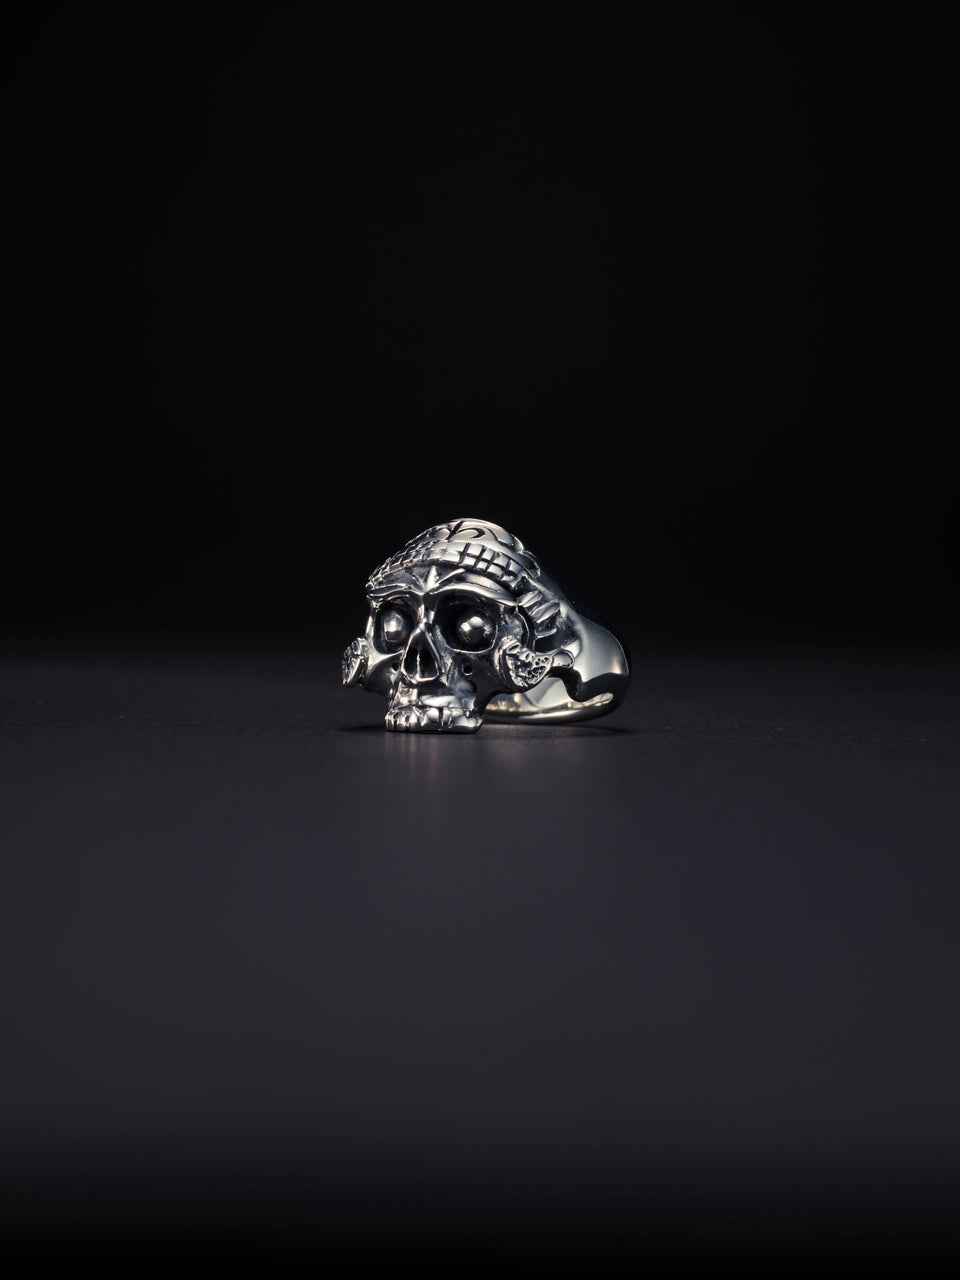 Tibetan Skull Ring